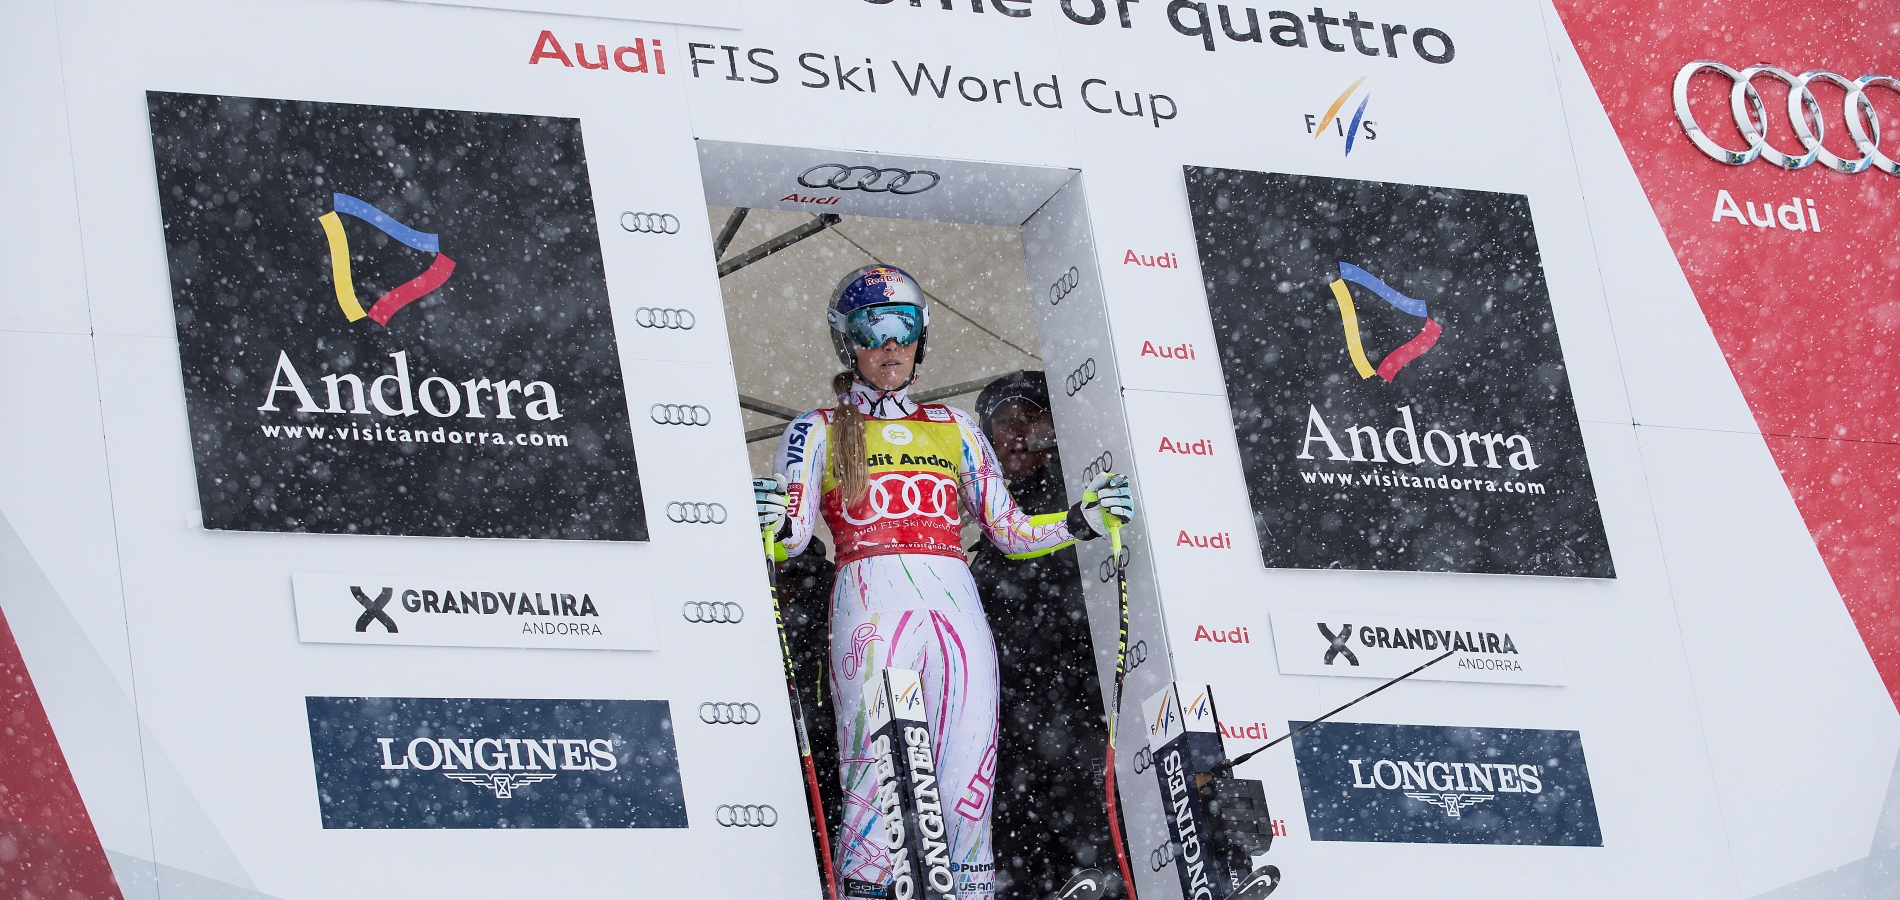 Grandvalira culmina 3 anys de feina per fer realitat l'esdeveniment més gran de la seva història Els dos traçats on es disputaran les diferents proves estan pràcticament a punt per a la gran cita que tindrà lloc de l'11 al 17 de març  Marcel Hirscher i Mikaela Shiffrin encapçalen la classificació de la competició, actualment aturada per la celebració dels Campionats del món a Suècia    Andorra la Vella, 8 de febrer del 2019. Des que l'octubre del 2015 la Federació Internacional d'Esquí (FIS) va escollir els sectors de Soldeu El Tarter de Grandvalira per a la celebració de les Finals de la Copa del Món d'esquí alpí del 2019, l'estació ha treballat incansablement per fer realitat l'esdeveniment esportiu més gran de la història d'Andorra. La gran cita serà de l'11 al 17 de març, quan el país rebrà els millors esquiadors i esquiadores del món, que lluitaran pel títol a les pistes Àliga d'El Tarter, on es disputaran les proves de velocitat, i Avet (Soldeu), escenari de les disciplines tècniques. Durant aquest temps, i més intensament a partir de la celebració de les finals de la Copa d'Europa de l'any passat, s'ha treballat per tal que l'estació disposi de la darrera tecnologia i totes les eines per tal de convertir l'Àliga i l'Avet en pistes de Copa del Món de referència a Europa. Un dels projectes ambiciosos que ho poden garantir és la plataforma esquiable de Soldeu, que ha permès ampliar l'arribada de la pista Avet, disposar de més espai per a les graderies, els equips i els patrocinadors, i millorar la logística de la retransmissió televisiva. El director general del Comitè Organitzador, Conrad Blanch, ha explicat durant la presentació d'aquest divendres que l'estació “està preparada per oferir al món la seva millor cara”. Després d'enllestir la nova plataforma, els equips tècnics s'han centrat durant les darreres setmanes en posar a punt els dos traçats on es disputaran les diferents proves. Blanch ha explicat que el traçat de la pista Avet està ja a punt, mentre que pel que fa a l'Àliga falta acabar de condicionar la part superior però que estarà en perfecte estat de cara a la històrica cita.   Les dues pistes hauran de passar l'anomenat snow control el pròxim 28 de febrer. A part d'aquest tràmit, la FIS, un cop va haver validat les instal·lacions el passat mes d’octubre, no s'ha pronunciat més, donant plena confiança a l'equip organitzador de les Finals. Els dies previs a l'esdeveniment, caldrà instal·lar un total de 18.195 metres de xarxa de seguretat.   La presentació també ha comptat amb la presència del cap de Govern,  Antoni Martí, en qualitat de president d’honor del Comitè Organitzador, que ha destacat que un esdeveniment d’aquestes característiques permet “associar la marca Andorra a l’elit esportiva mundial”. També ha pres la paraula el cònsol major de Canillo, Josep Mandicó, que ha tingut unes paraules emotives per a tots aquells visionaris que van creure en el projecte i ha esperonat a tots els andorrans a viure les finals com un espectacle únic que no es poden perdre. De la seva banda, Xavier Cornella, conseller executiu i director general de Crèdit Andorrà, el principal patrocinador, ha recordat que “ja fa més de mig segle que donem suport a l’esquí. El nostre compromís cap a aquestes Finals forma part d’un convenciment que ve de molt enrere i el temps ha avalat que aquest compromís era encertat”.   Marcel Hirscher i Mikaela Shiffrin encapçalen la classificació S'espera que la competició aplegui una norantena d'esquiadors, sumant els 25 corredors i corredores de cada disciplina, tot i que el nombre exacte se sabrà un cop es tanquin les inscripcions el 25 de febrer. Actualment, el circuit de Copa del Món està aturat perquè s'estan disputant els Campionats del Món a Åre, Suècia, una cita que se celebra cada dos anys. Fins a la data, la classificació general masculina l'encapçalen l'imbatible esquiador austríac Marcel Hirscher, seguit pel francès Alexis Pinturault i el noruec Henrik Kristoffersen. En categoria femenina, l'americana Mikaela Shiffrin està en primera posició, l'eslovaca Petra Vlhová és segona i la suissa Wendy Holdener ocupa el tercer lloc. Les Finals de la Copa del Món Andorra 2019 no comptaran amb la llegenda de l'esquí Lindsey Vonn, ja que ha anunciat que es retira després dels mundials d'Åre, ni tampoc amb l'especialista en velocitat Aksel Lund Svindal, que també penja els esquís aquest febrer. La competició mobilitzarà fins a 600 persones dels equips de cadascun dels 18 països participants.   Aquest hivern, tots serem campions A banda del vessant competitiu, l'organització de les Finals de la Copa del Món ha fet un esforç per implicar tota la societat andorrana en l'esdeveniment, portant a tot arreu el lema “Aquest hivern, tots serem campions”. Així, s'espera que la gran cita tingui una repercussió sense precedents a Andorra: l'objectiu és assolir 25.000 persones de públic durant les cinc jornades de competició, aproximadament la meitat a Soldeu i l'altra meitat a El Tarter. Entre les xifres de difusió hi ha les 60 televisions amb drets de retransmissió, 35 de les quals emetran les proves en directe i  els 700 milions potencials teleespectadors que es preveu que segueixin les proves. Andorra Televisió gaudirà dels drets de retransmissió i emetrà les proves en directe. A més, també s'instal·larà una pantalla gegant al centre d'Andorra la Vella on es podran seguir les proves  per acostar la competició a tota la societat. Un altre indicador del ressò mediàtic que tindrà l'esdeveniment són els 350 periodistes que l’organització preveu acollir durant els dies de la competició. Actualment ja s’han acreditat més de 200 periodistes. A més, a banda de les proves esportives, també s'ha dissenyat un programa d'esdeveniments paral·lels per tal que el públic assistent pugui gaudir al costat dels seus ídols. Entre les activitats previstes hi ha una gran desfilada dels equips el 9 de març i una cerimònia d'inauguració a la pista Avet el 12 de març. També es farà un sorteig públic de dorsals el 16 de març, i durant tota la setmana hi haurà un programa d'animacions après-ski a L'Abarset, així com un espai d'exposició per tal que les principals marques d'esquí presentin materials i novetats.    Descàrrega fotos i vídeo, aquí:  https://we.tl/t-1kYA6arIxc  